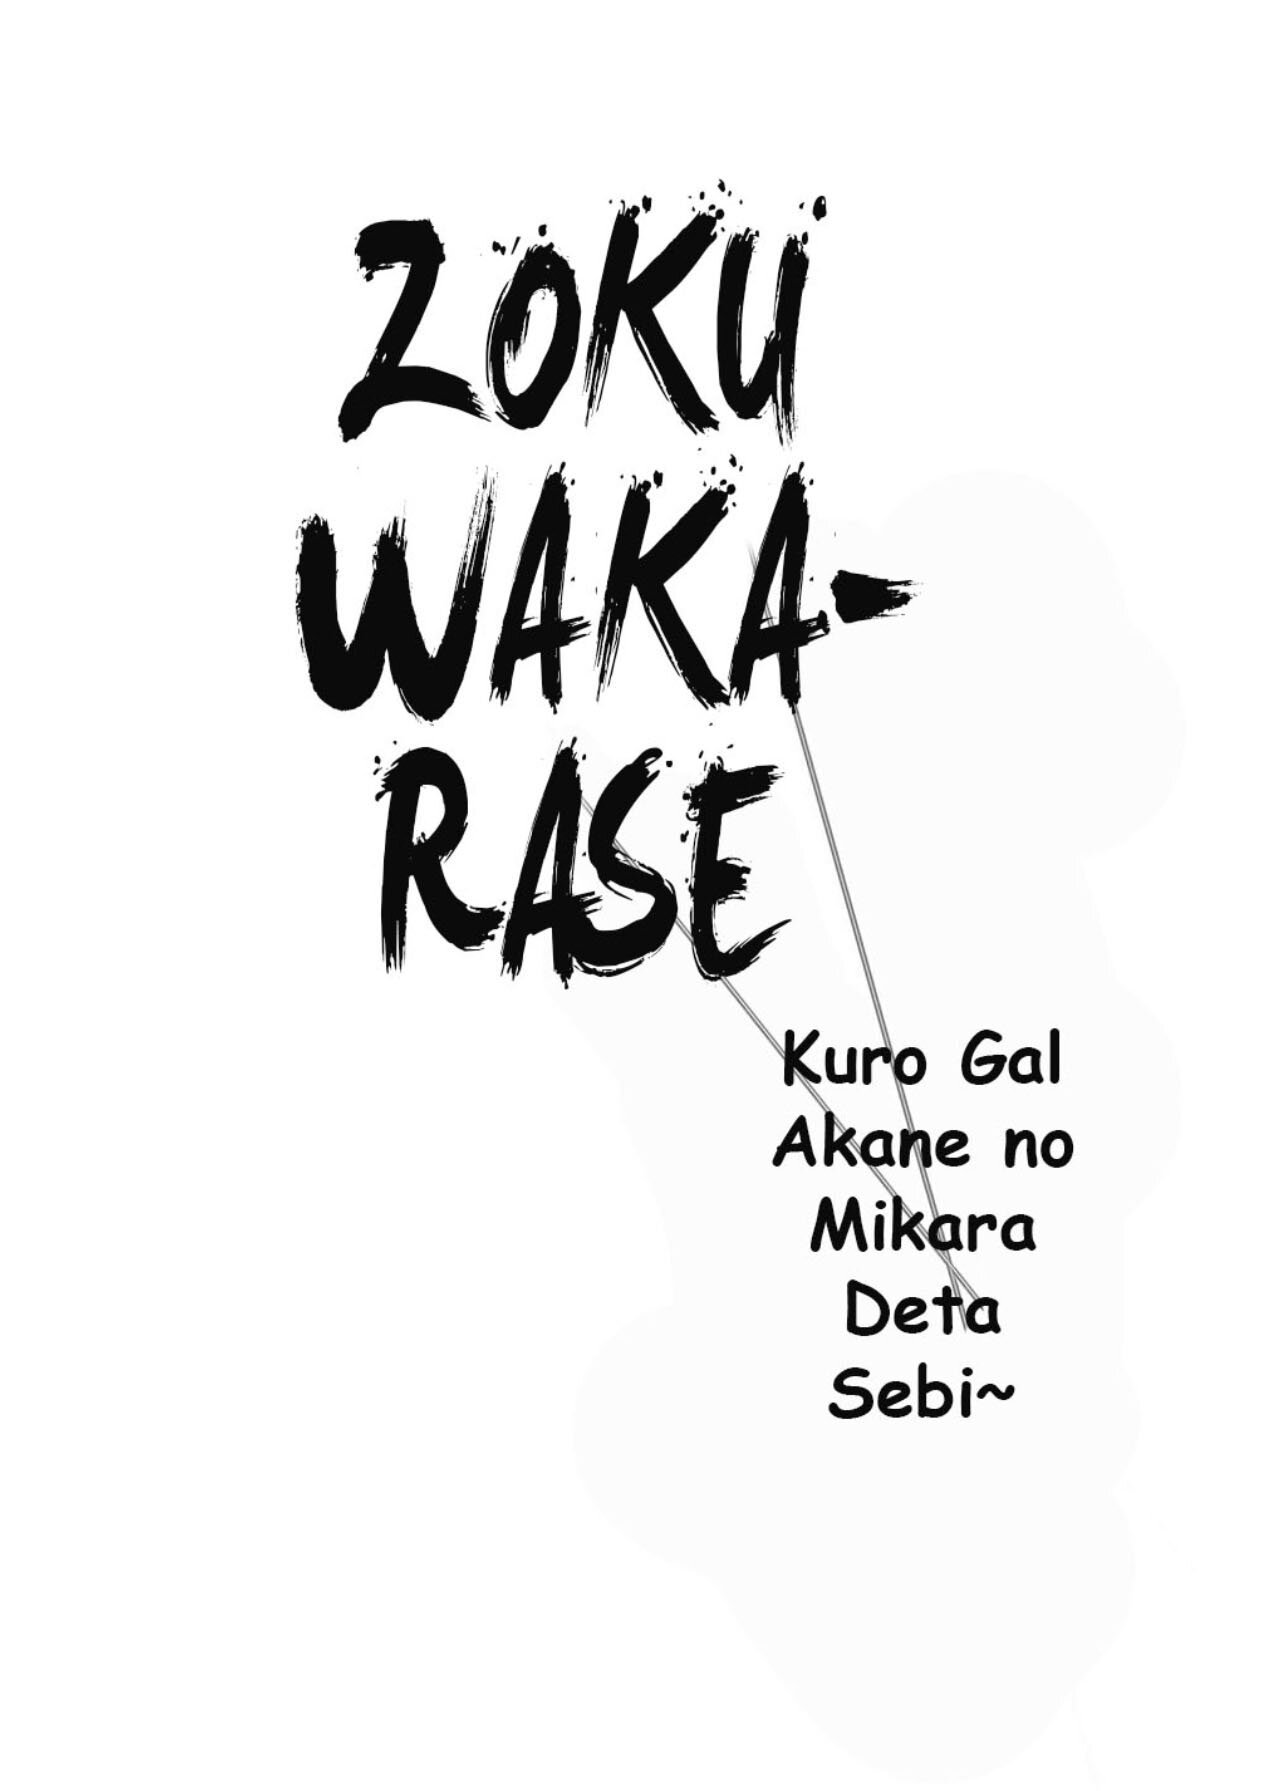 Zoku Wakarase - Kuro Gal Akane no Mikara Deta Sebi - 33